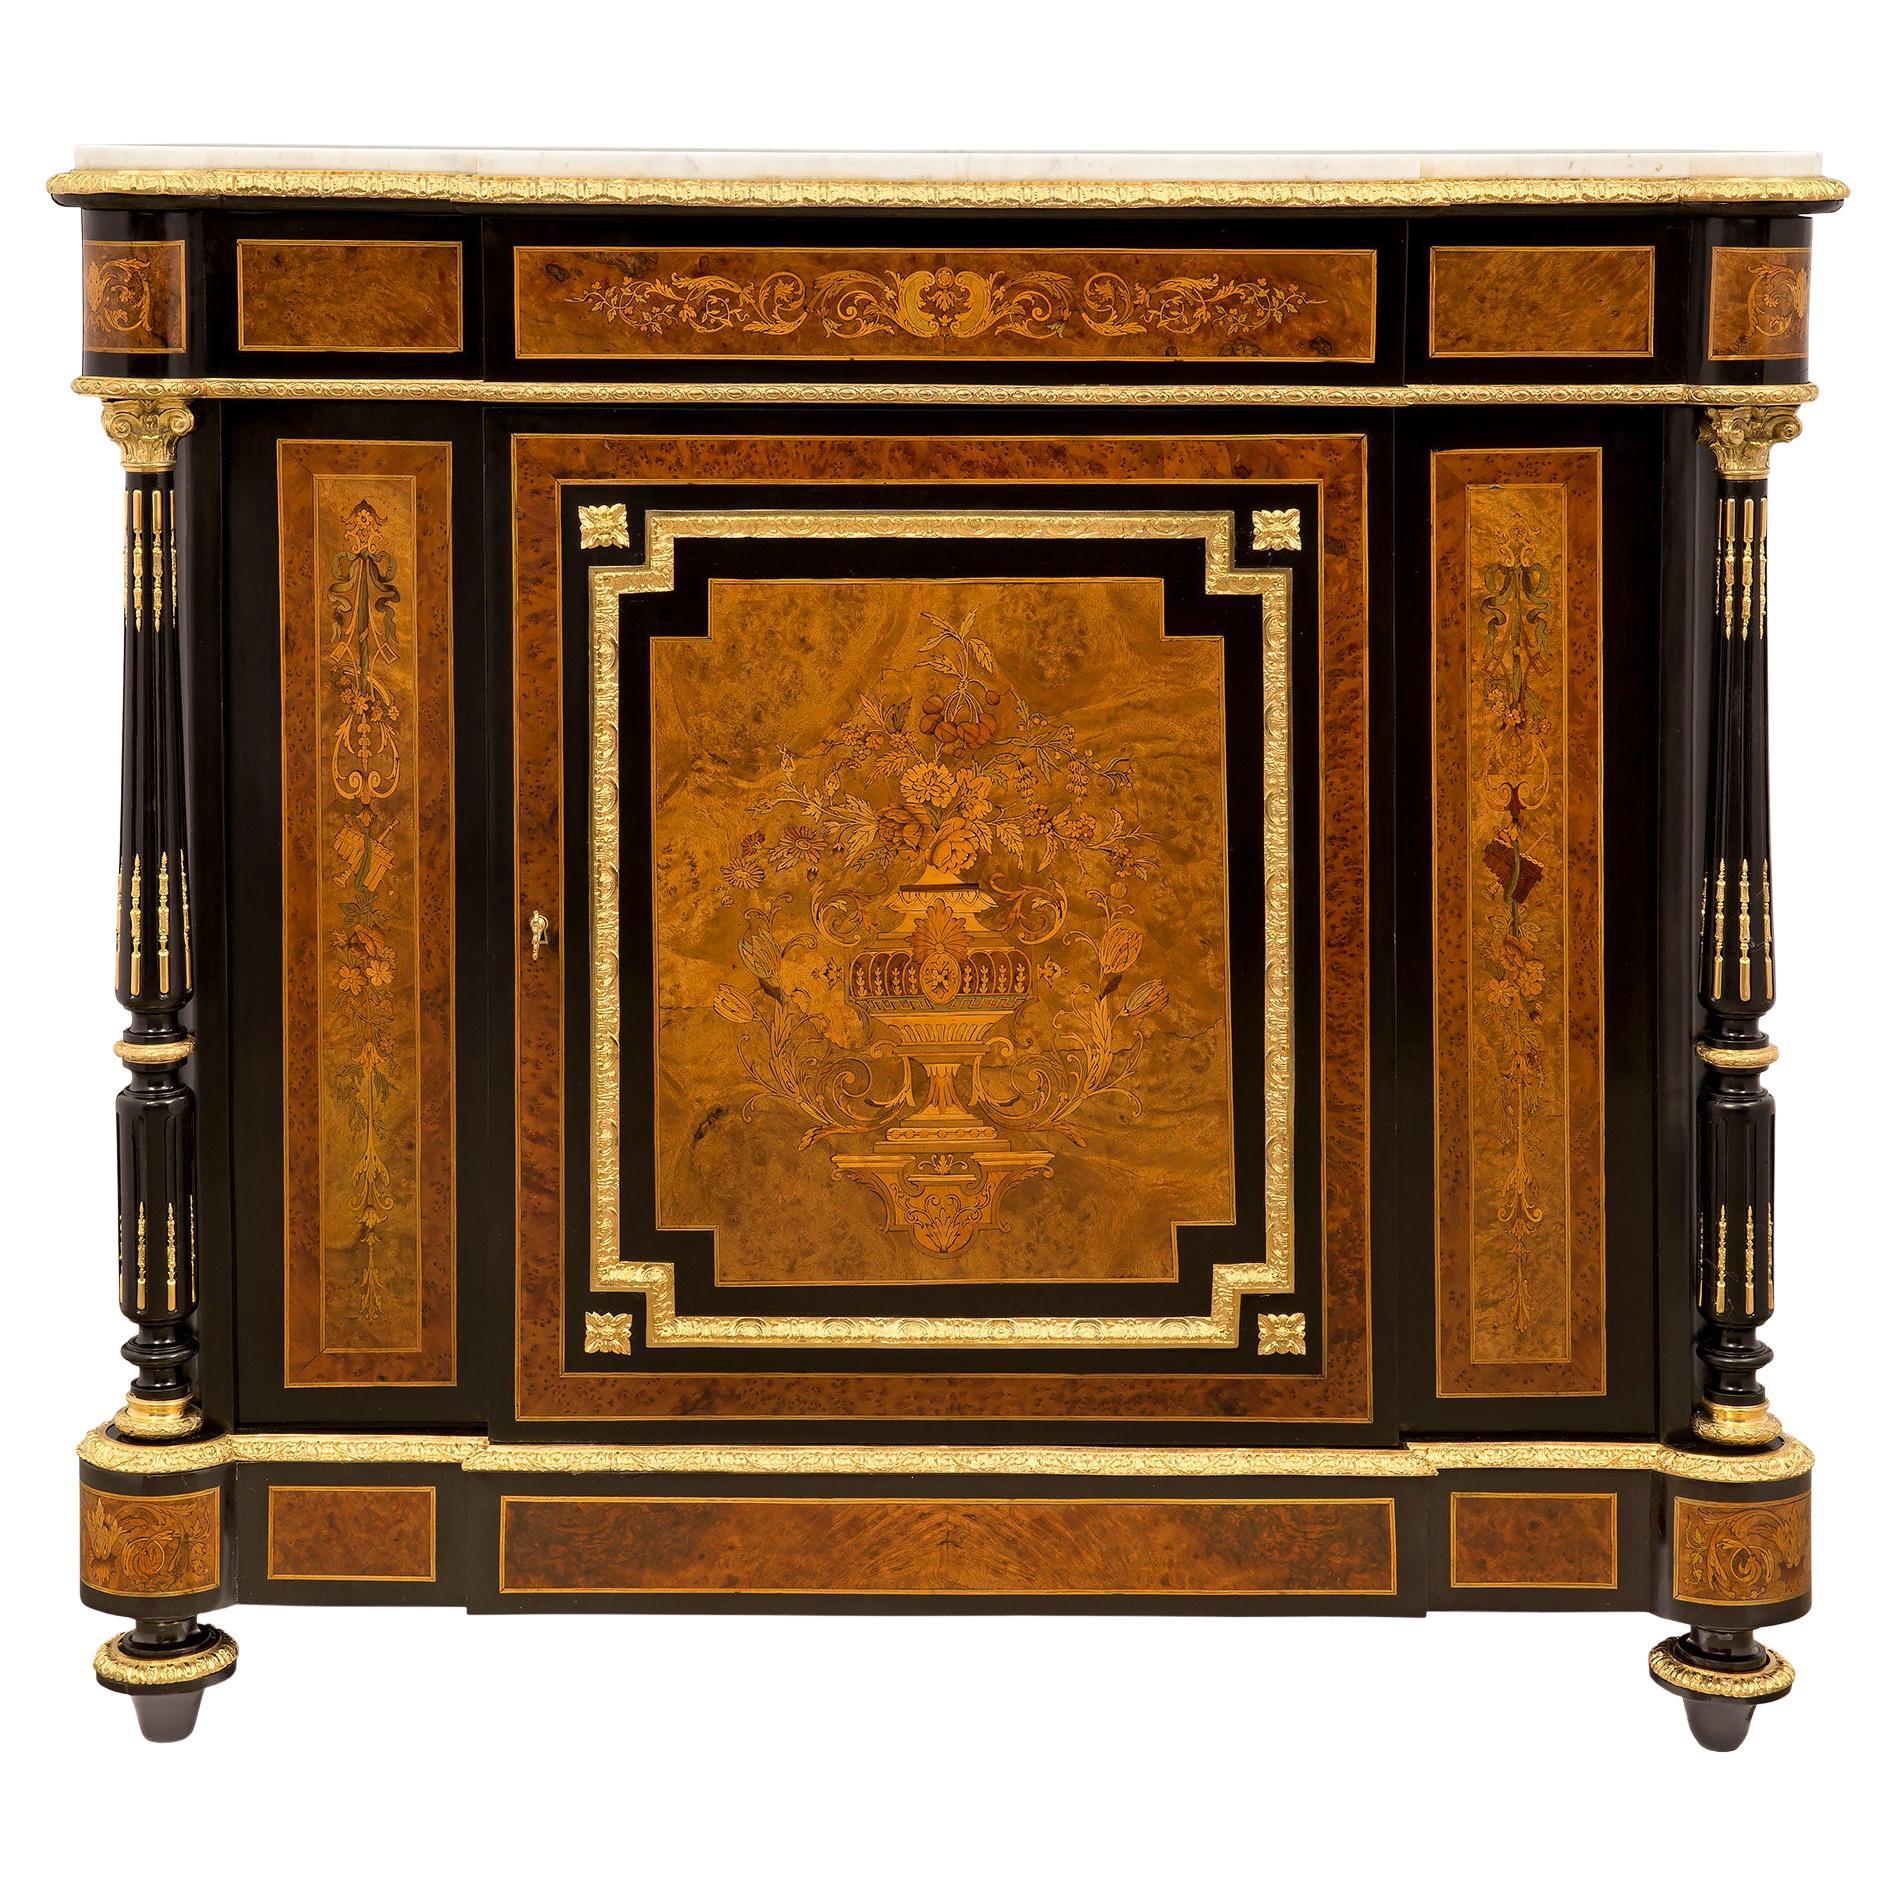 Französischer Schrank aus exotischem Holz, Ormolu und Marmor aus der Zeit Napoleons III. des 19. Jahrhunderts